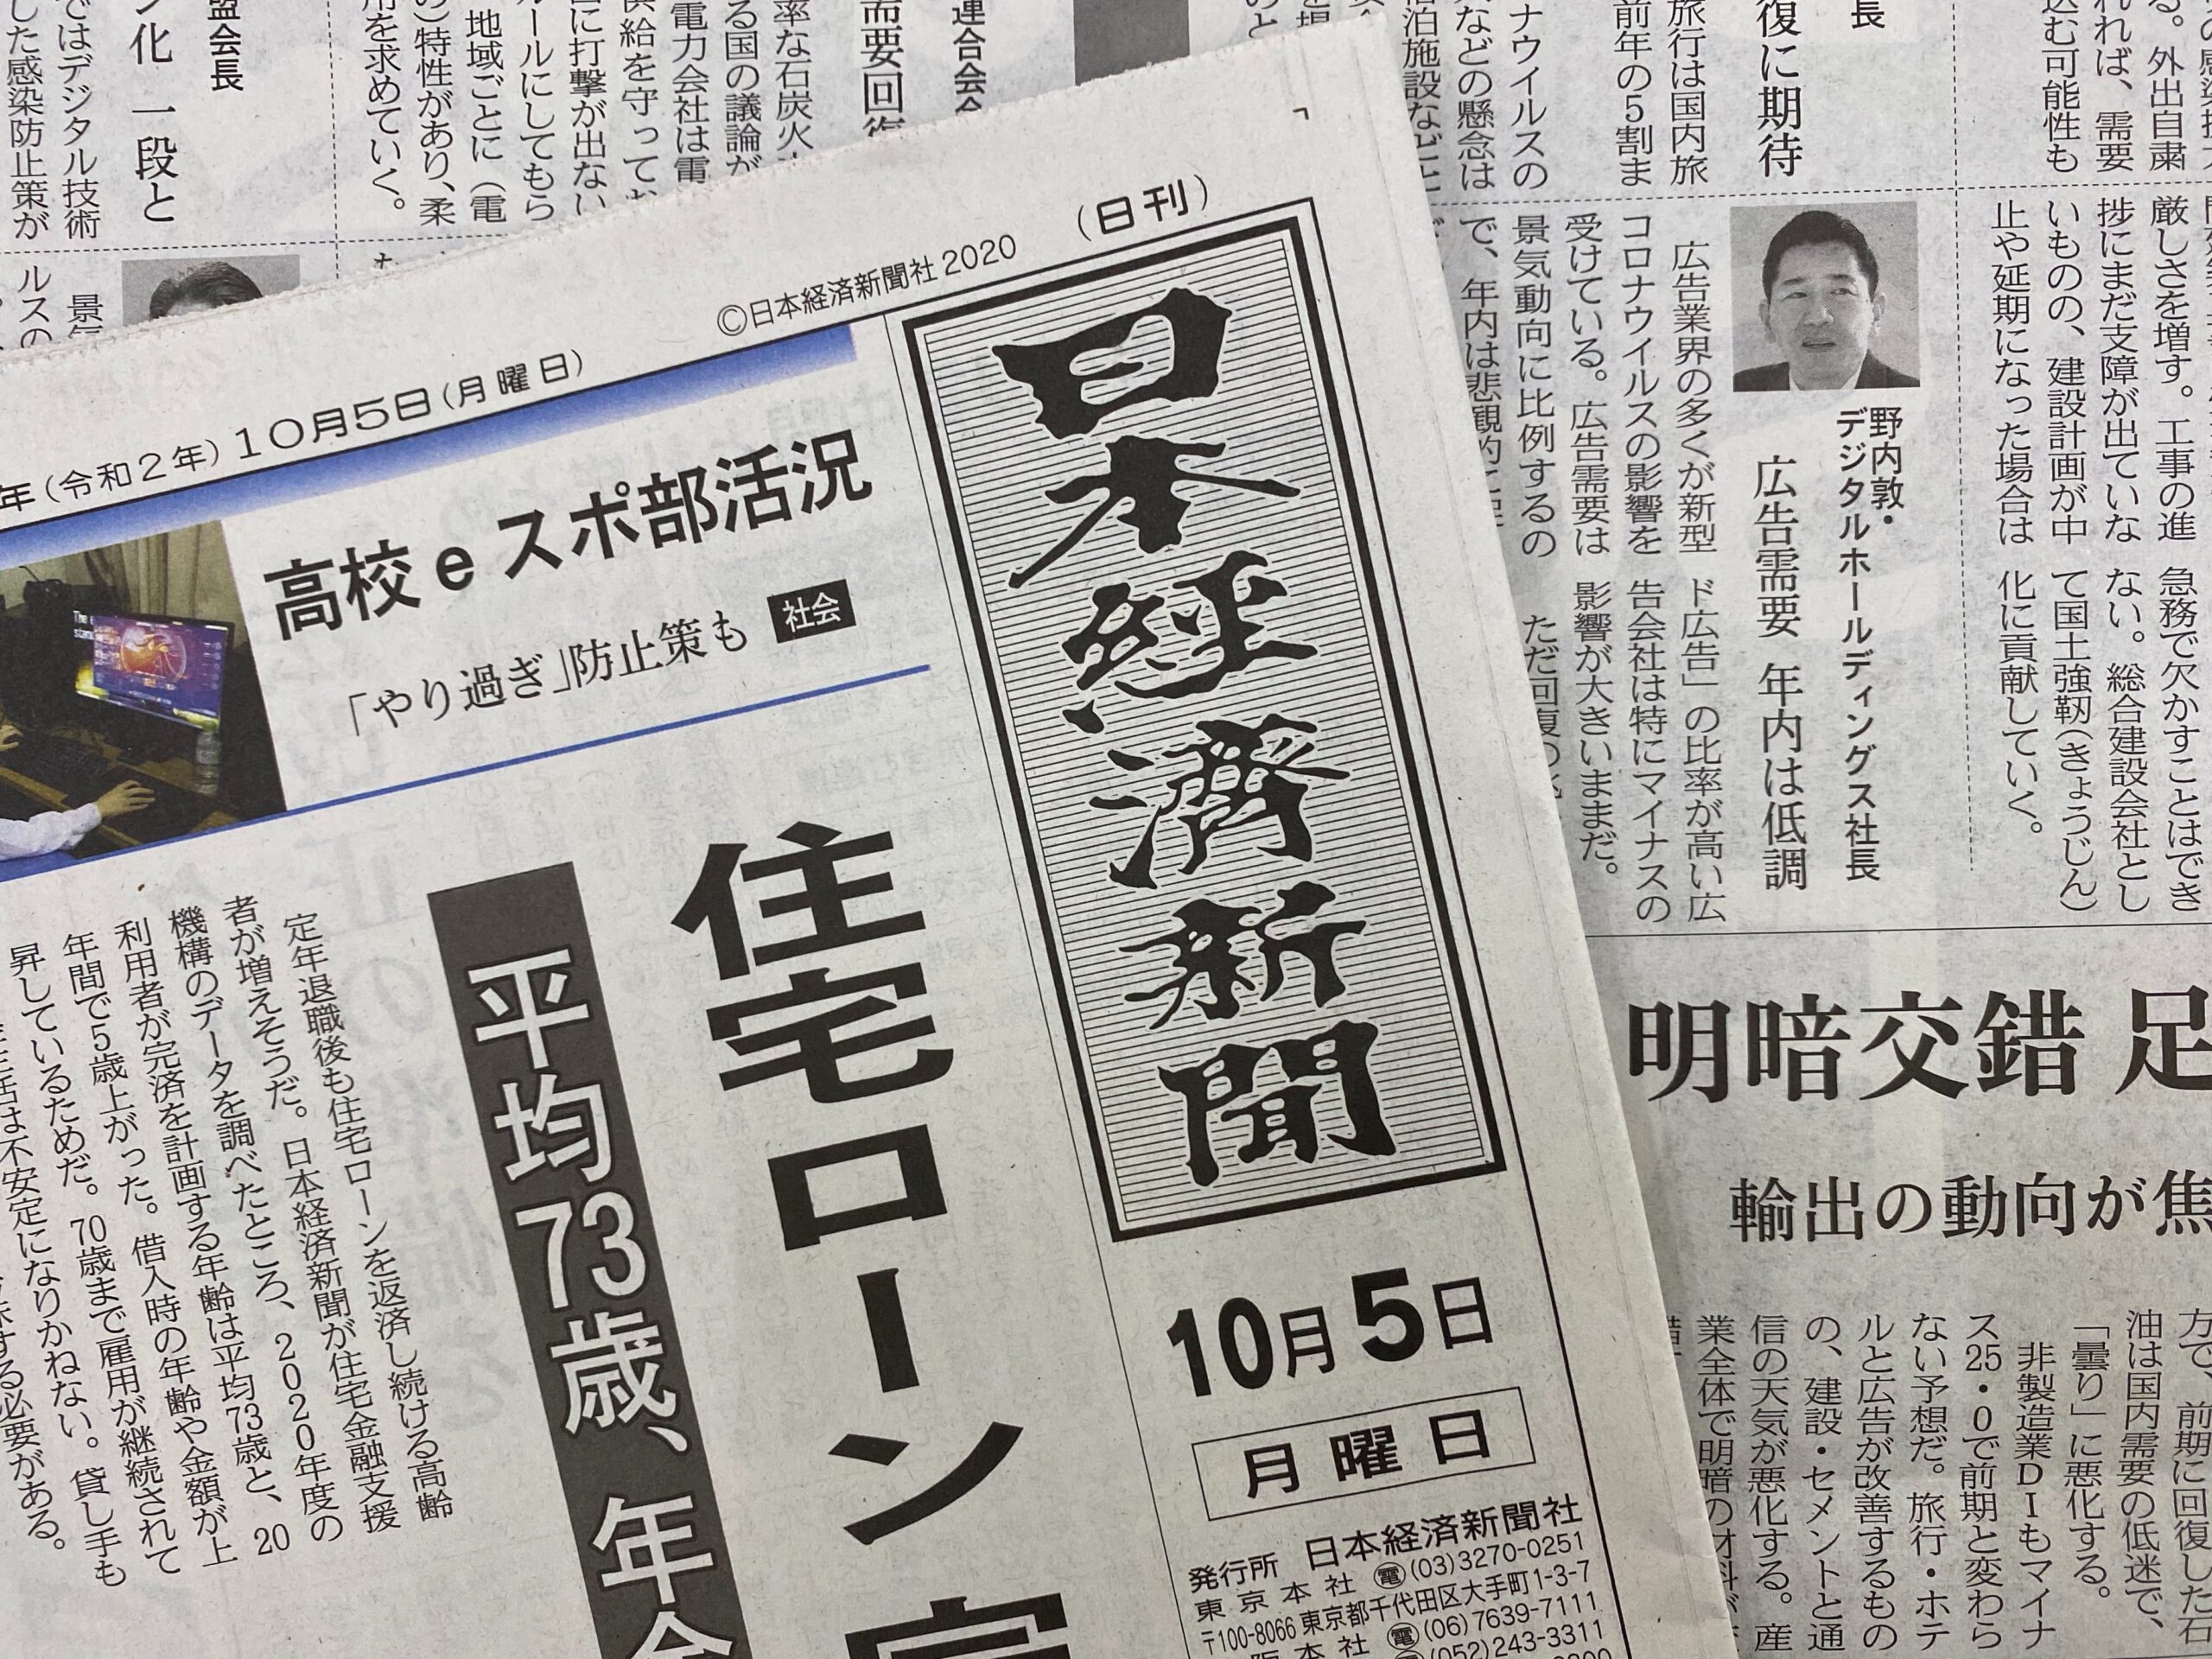 この1年で200万部以上も減少した…全紙合計で3084万部しかない｢日本の新聞｣が消滅する日